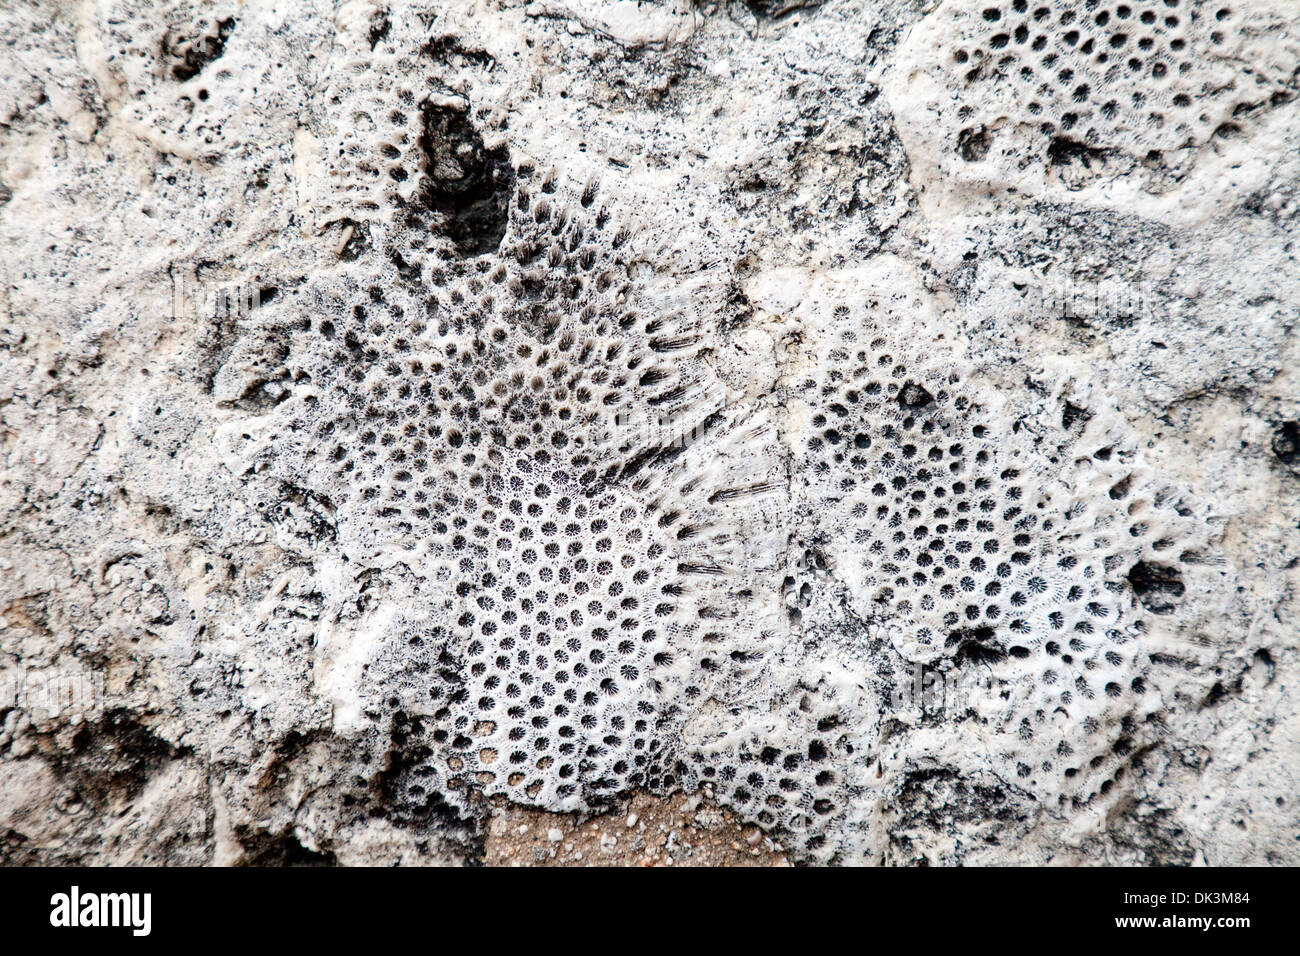 Esponja marina fósiles en piedra caliza usada para construir el convento de San Francisco de Asís, La Habana, Cuba, El Caribe Foto de stock